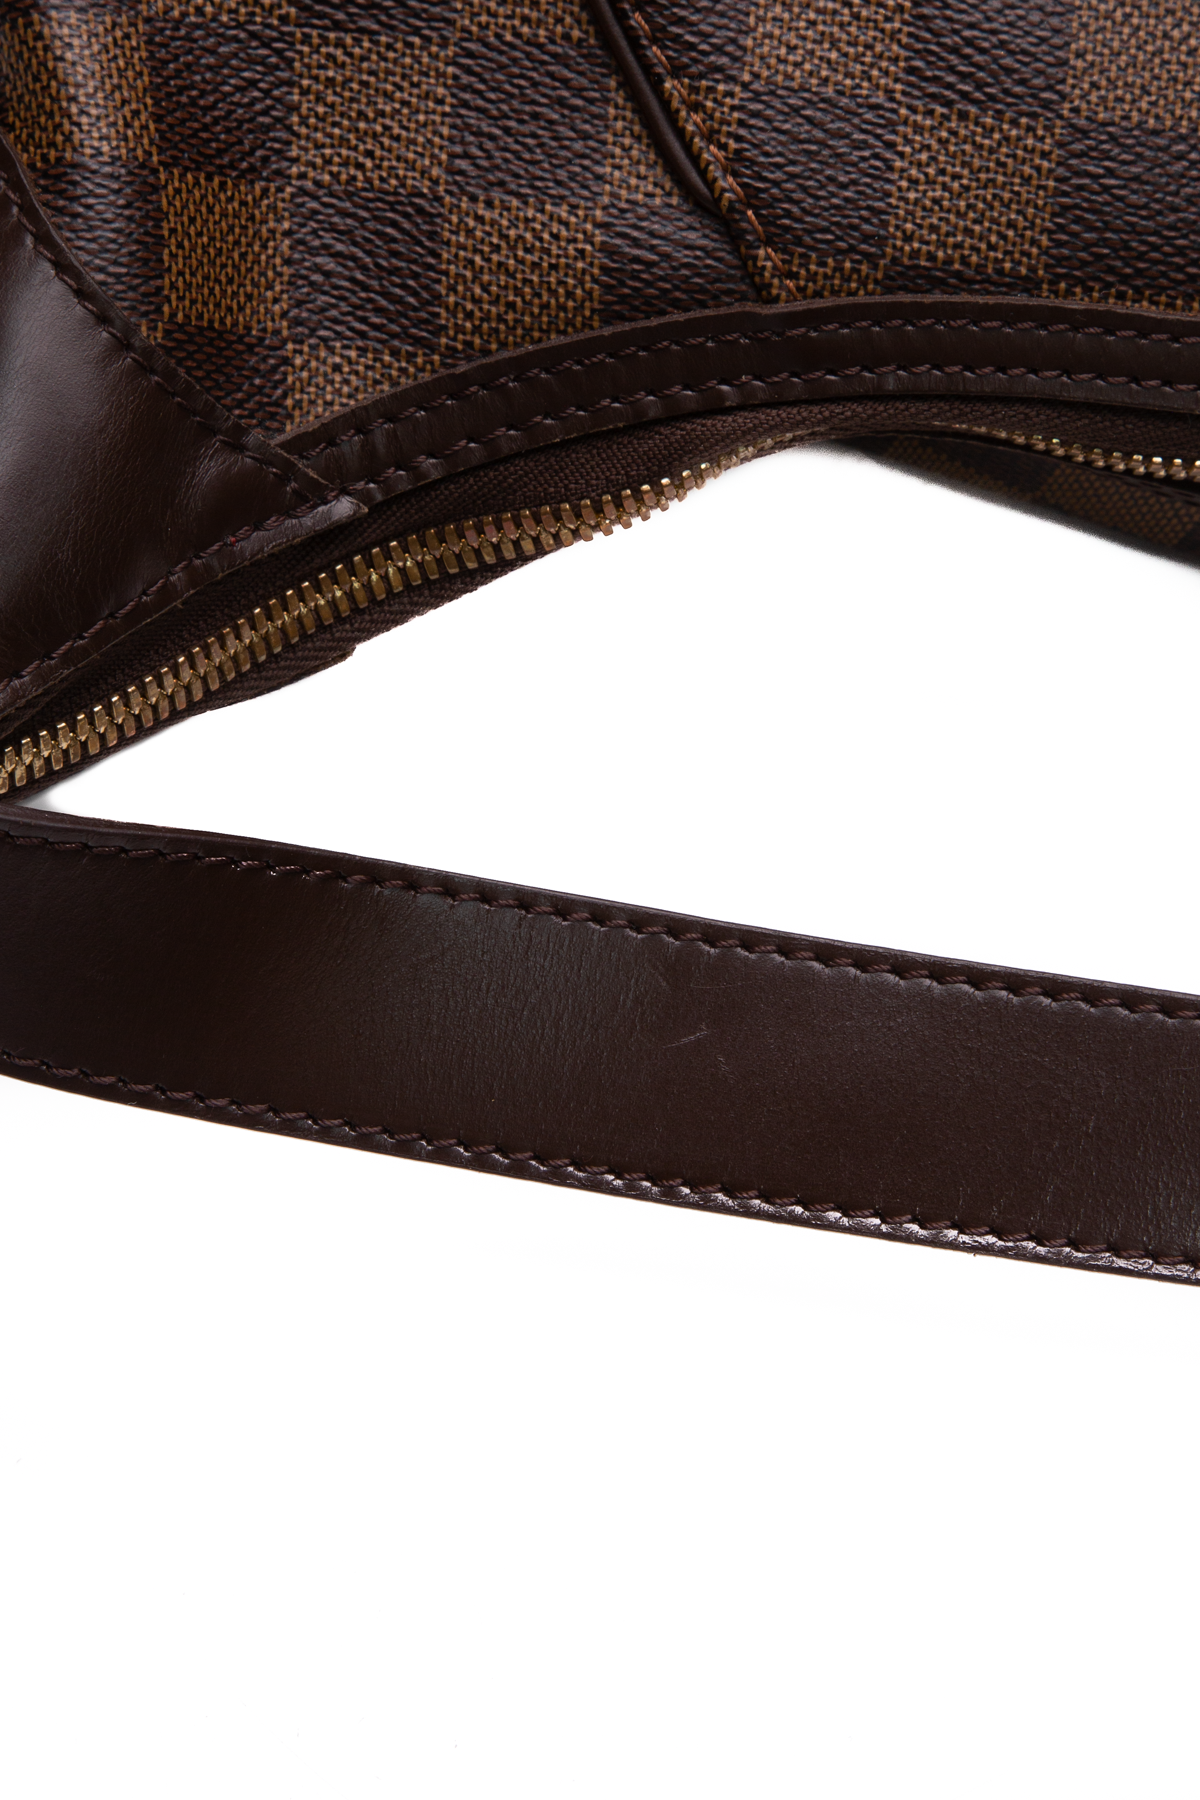 Buy Dark Brown damier Ebene / DE Leather Strap for LV Artsy Online in India  